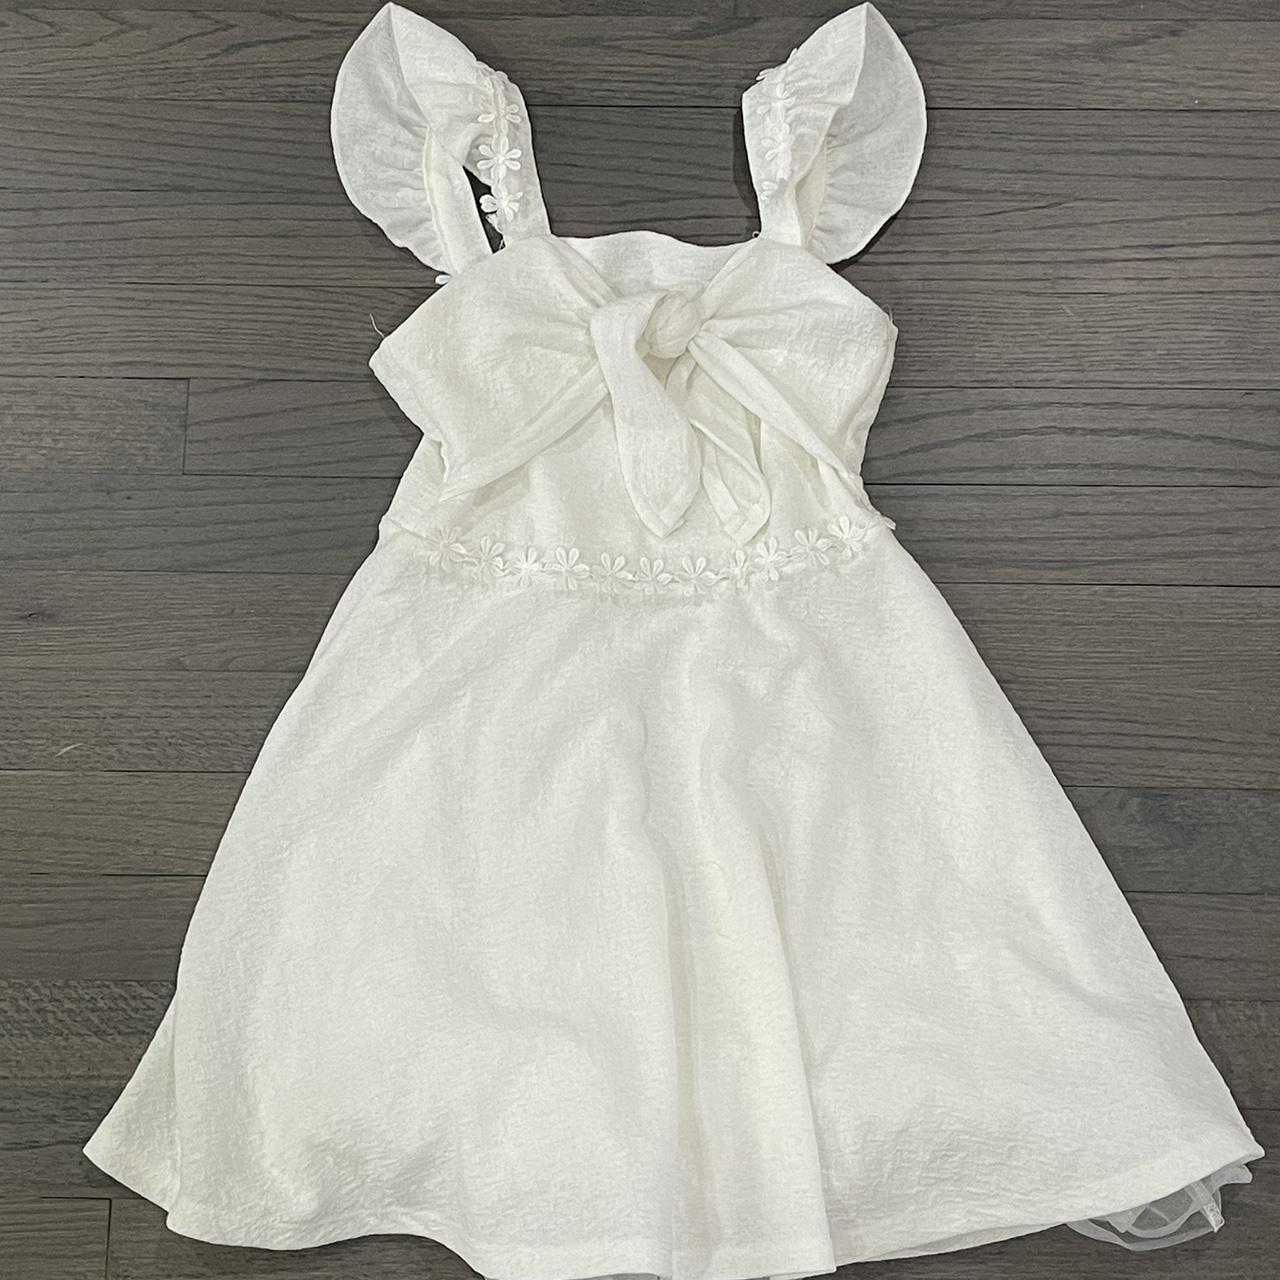 Kohl's Women's White and Cream Dress | Depop